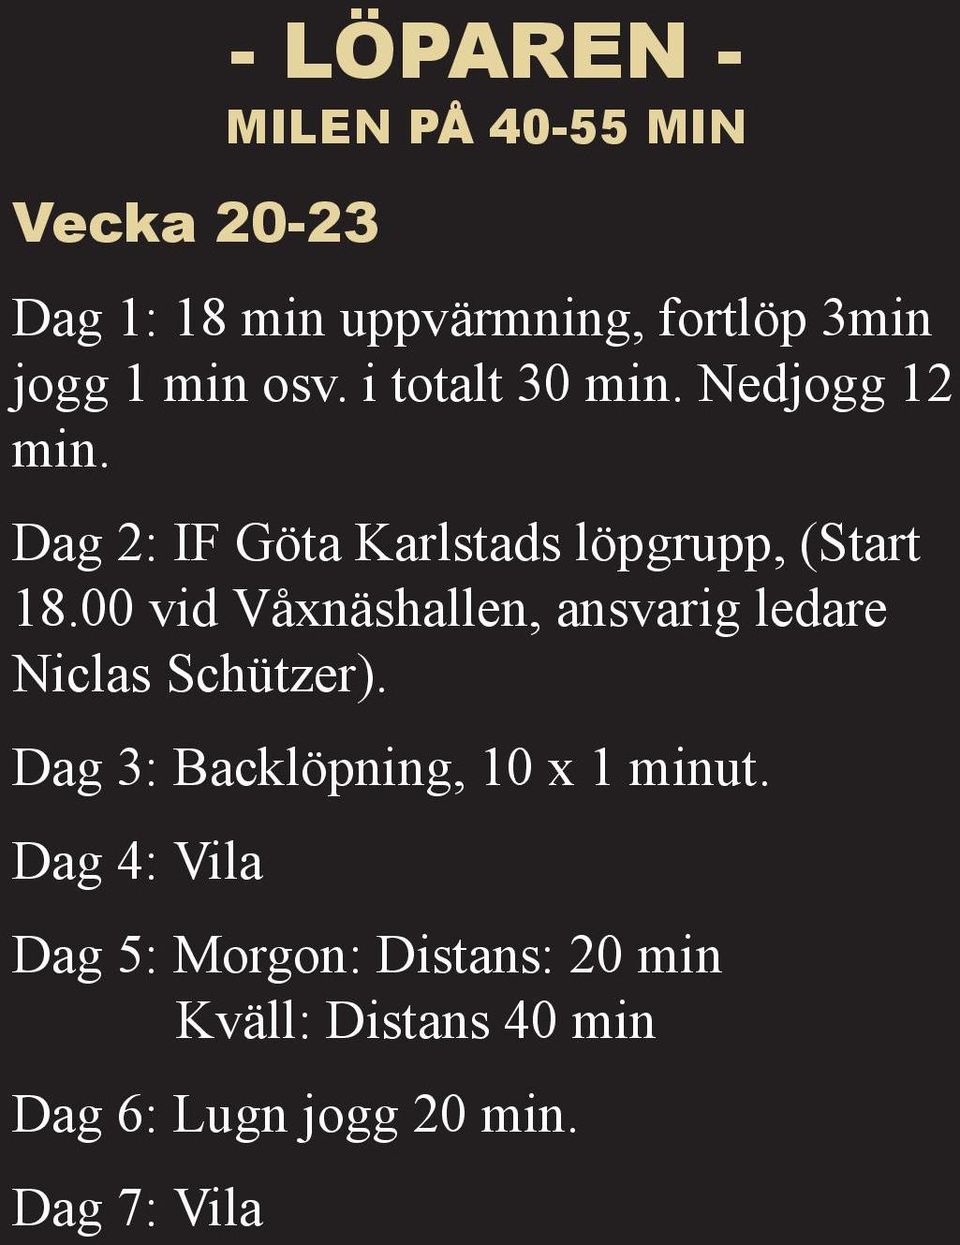 00 vid Våxnäshallen, ansvarig ledare Niclas Schützer). Dag 3: Backlöpning, 10 x 1 minut.